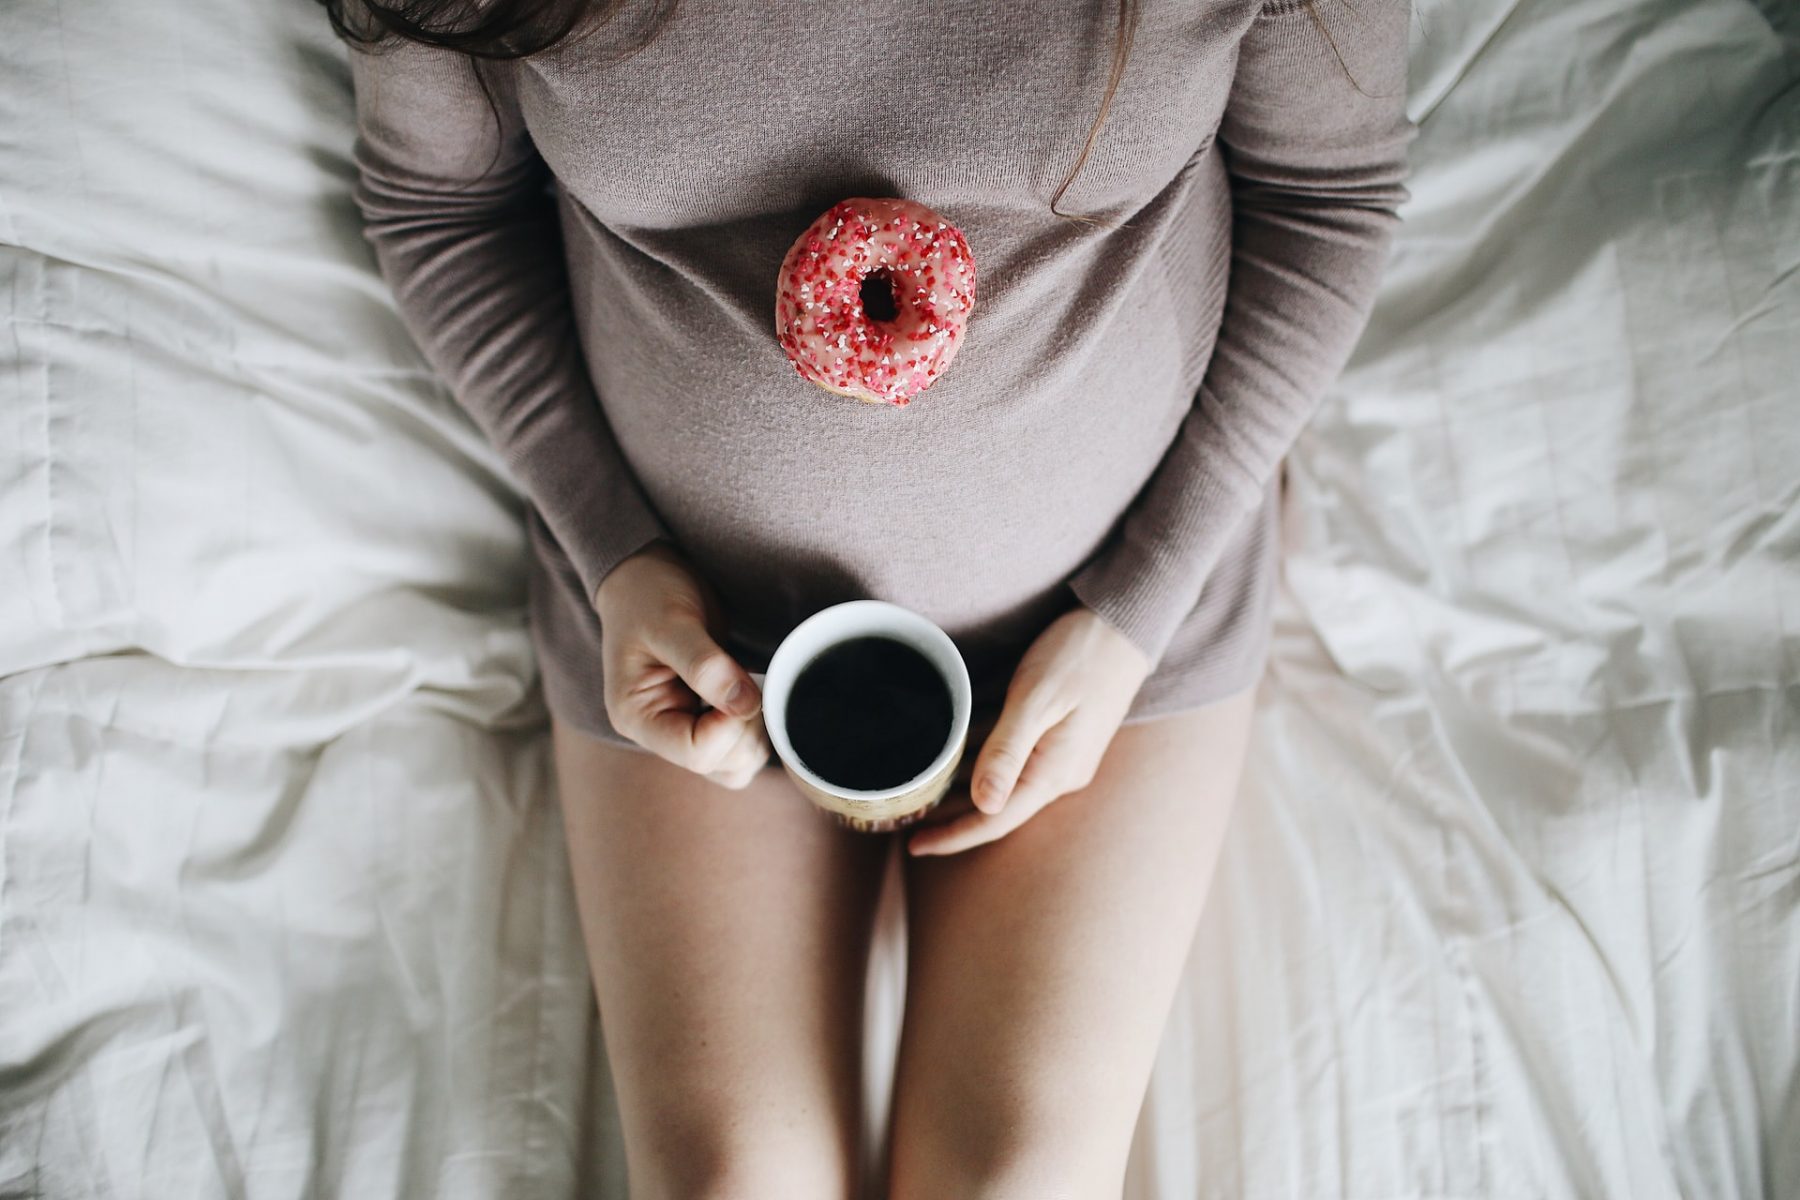 Καφές εγκυμοσύνη: Η μέτρια κατανάλωση καφέ δεν οδηγεί σε προβλήματα κατά την κύηση